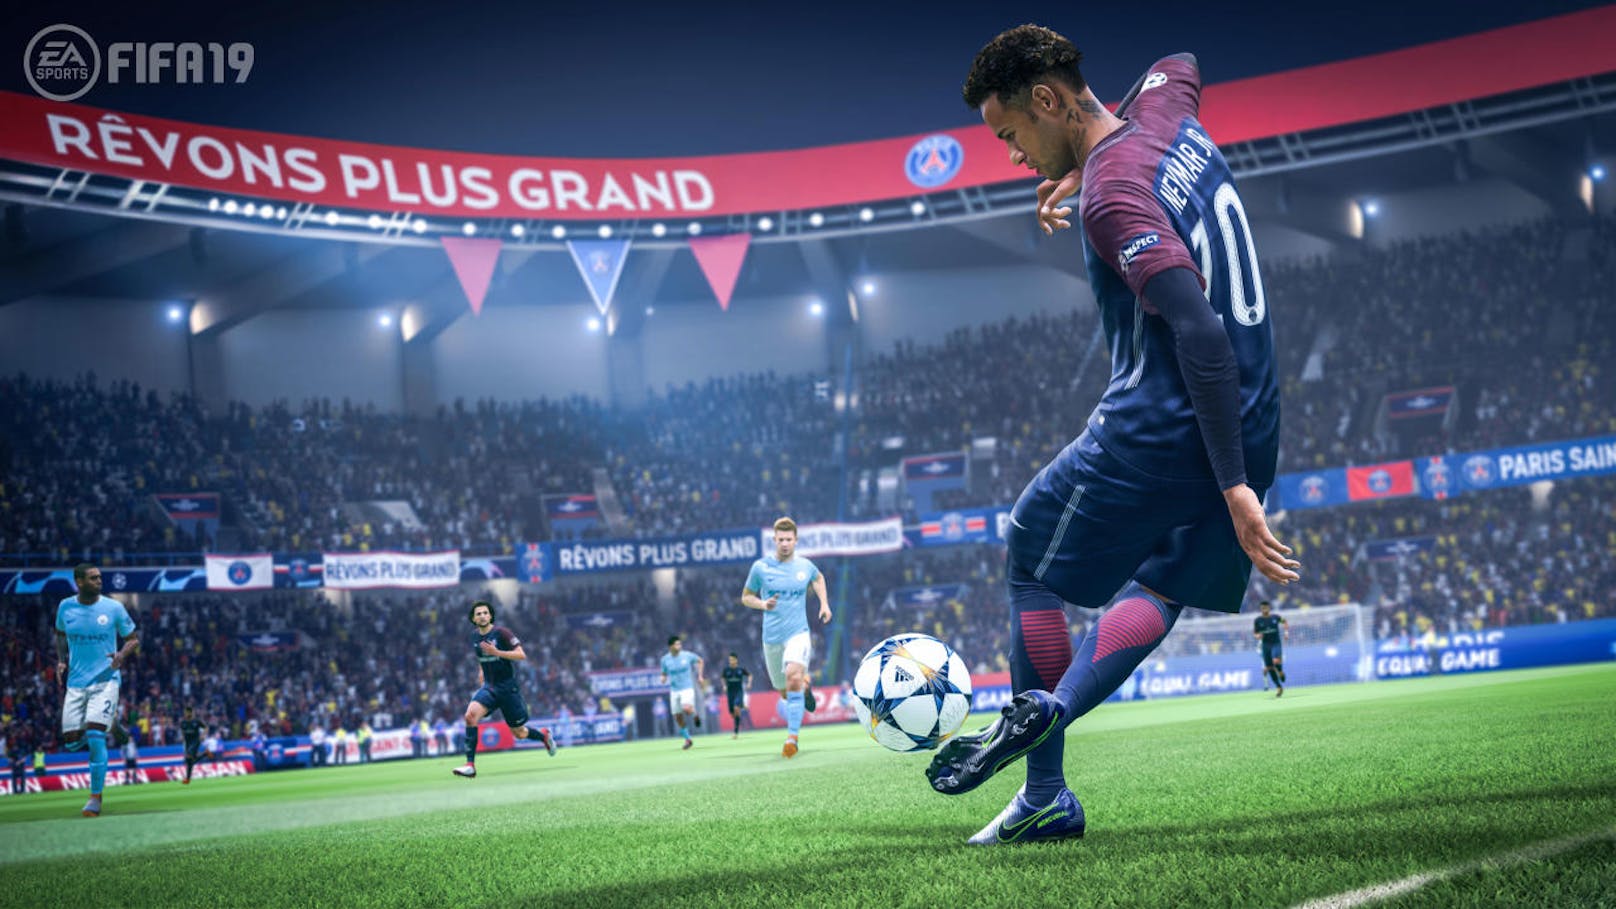 EA Sports und FIFA 19 haben heuer wieder einen größeren Sprung in der Entwicklung gemacht. Dadurch setzt sich der Trend fort, dass die Titel in den ungeraden Jahren mehr Innovation versprechen.